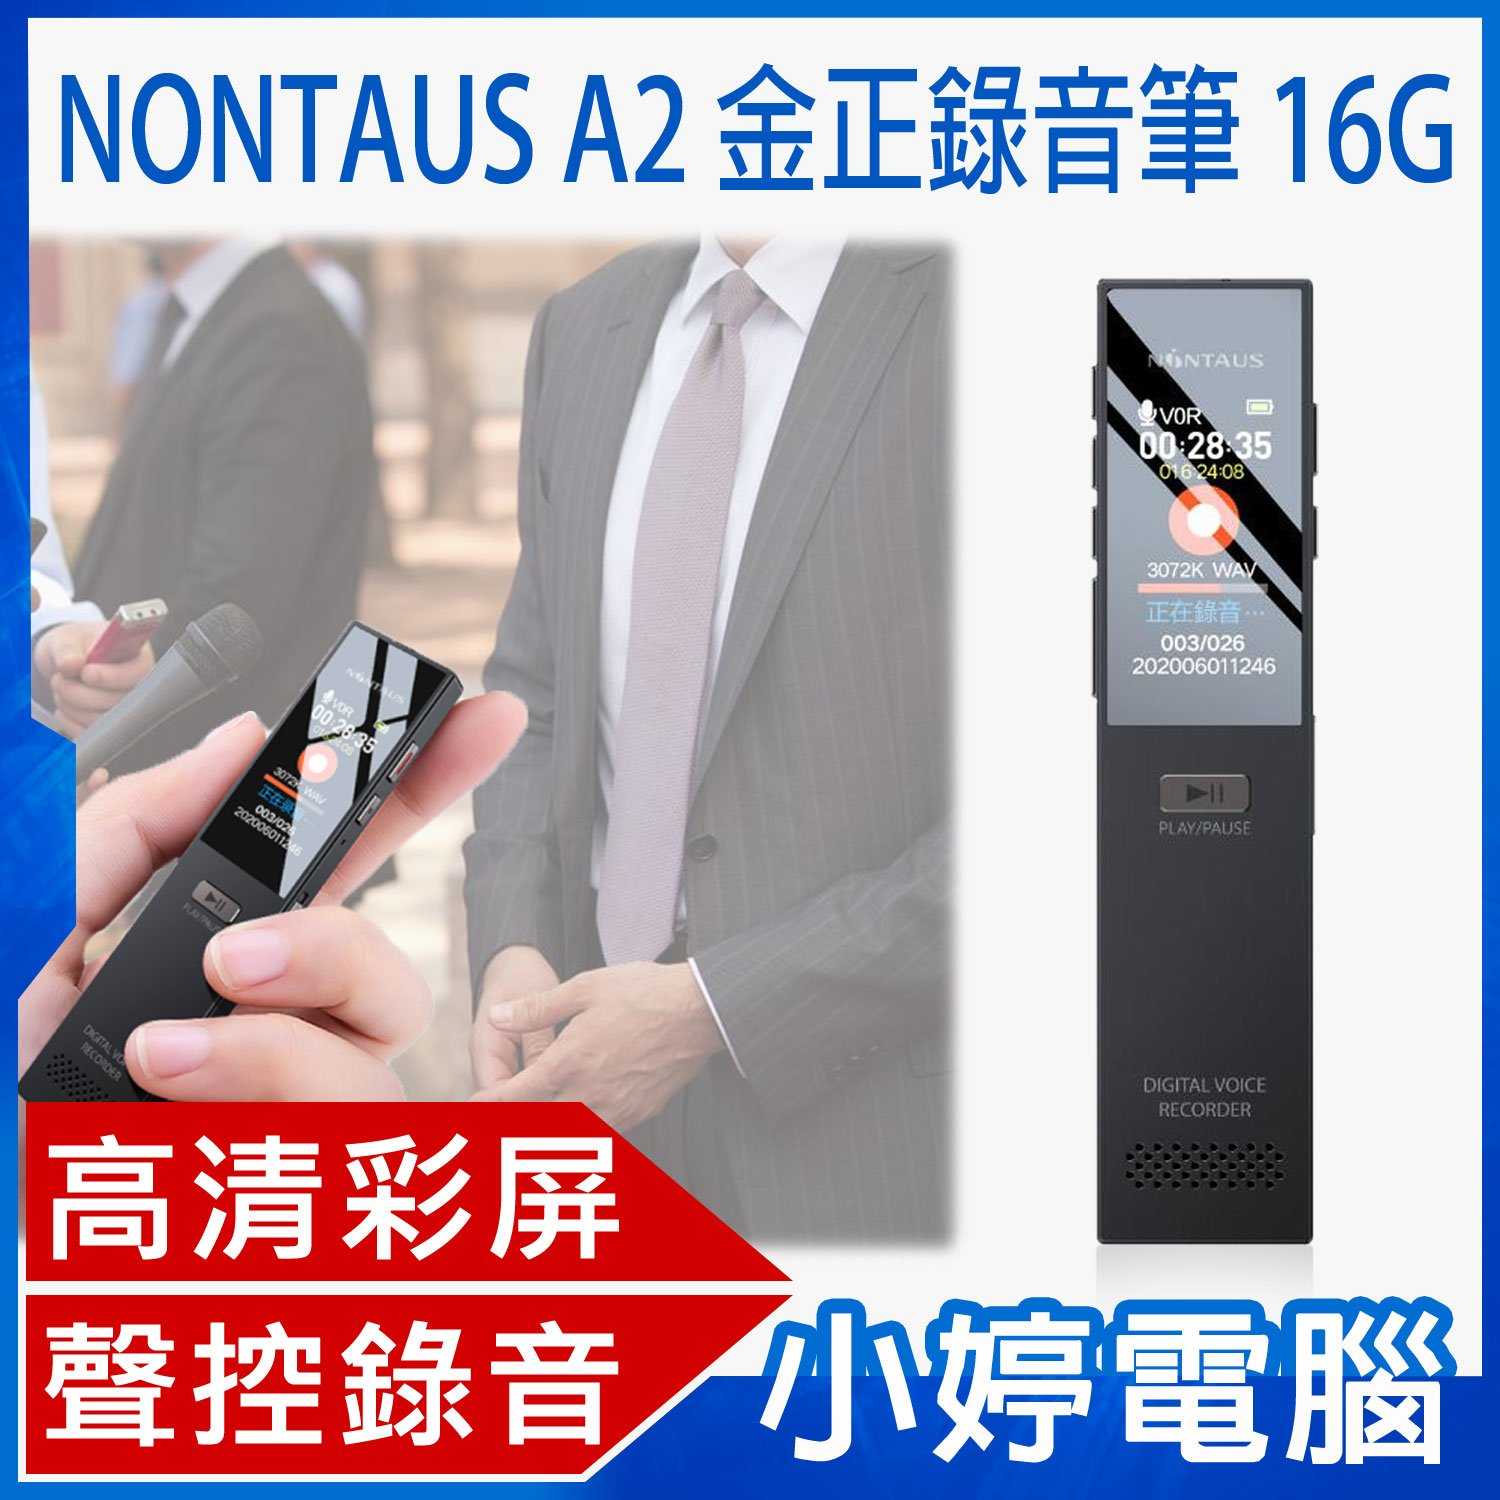 【小婷電腦】NONTAUS A2 金正錄音筆 16G 高畫質彩屏 聲控錄音 遠距錄音 無損音質 輕薄便攜